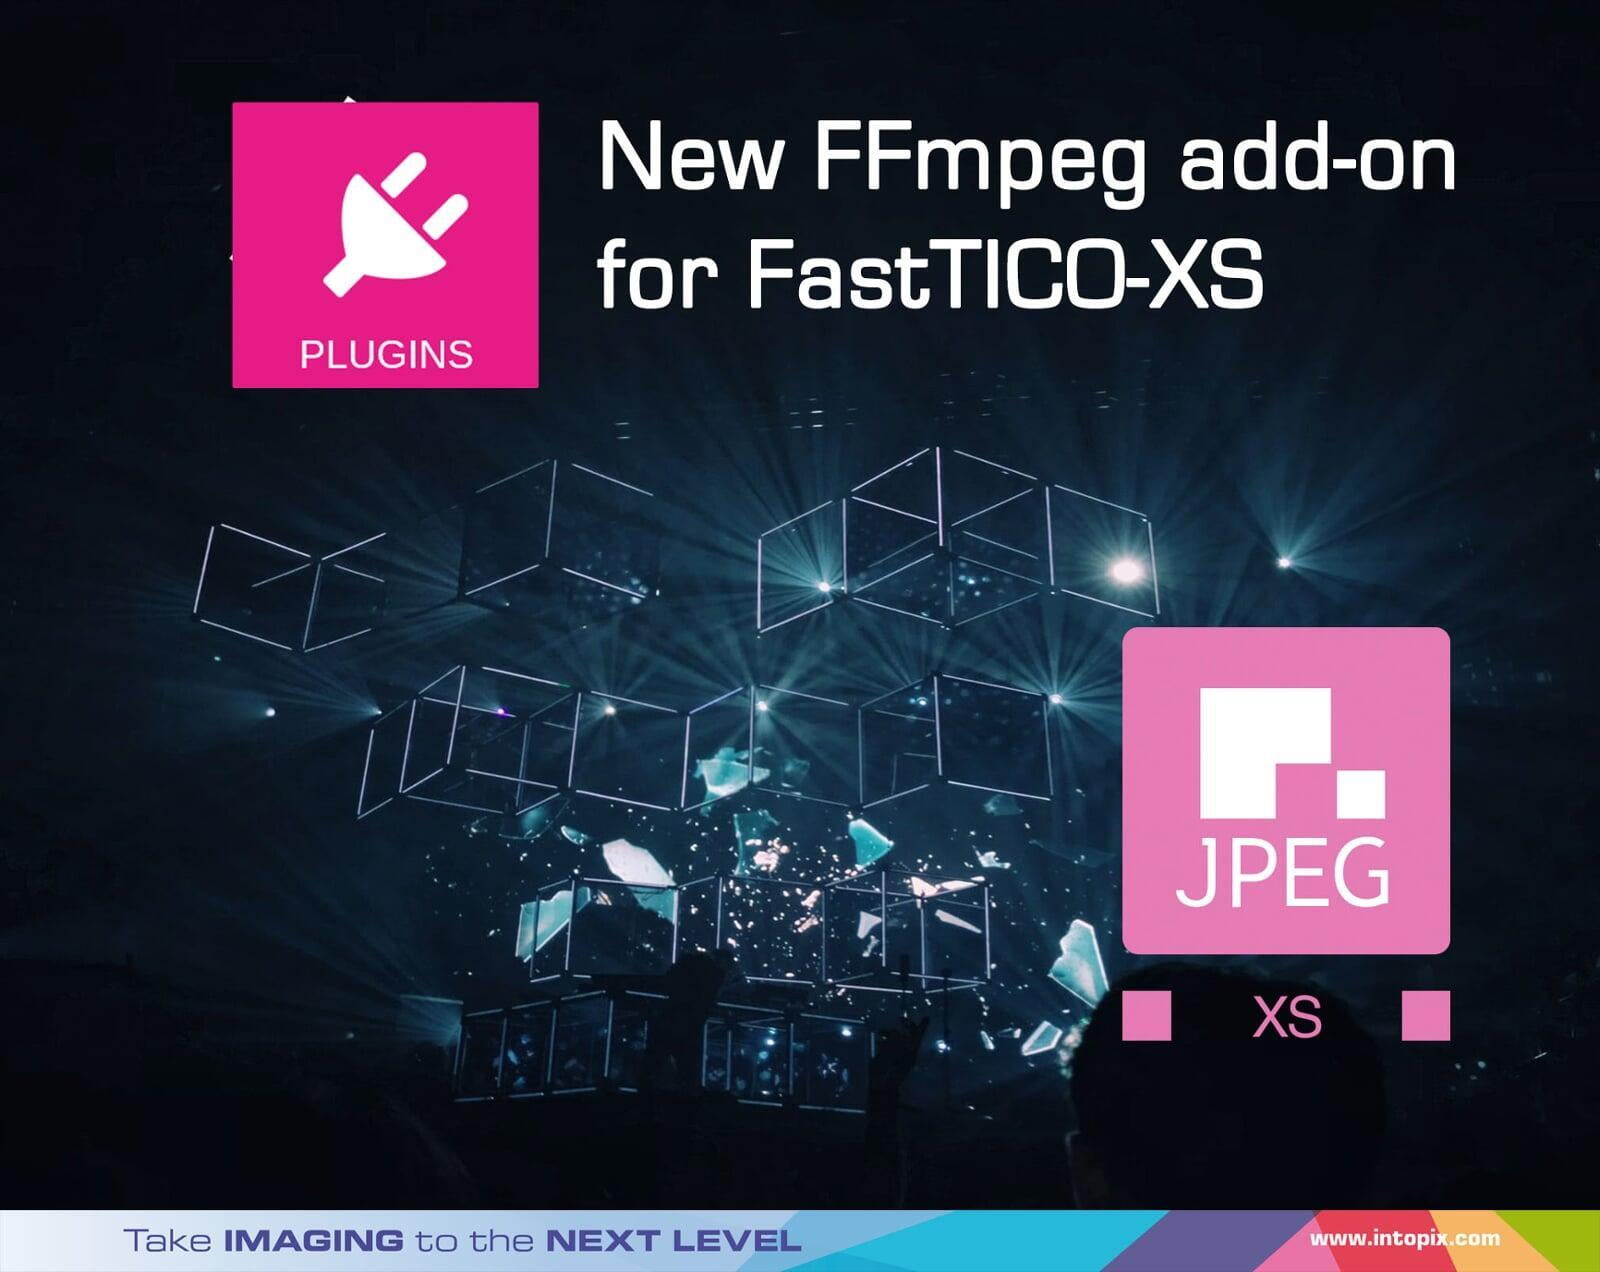 FastTICO-XS 용 FFmpeg 애드온